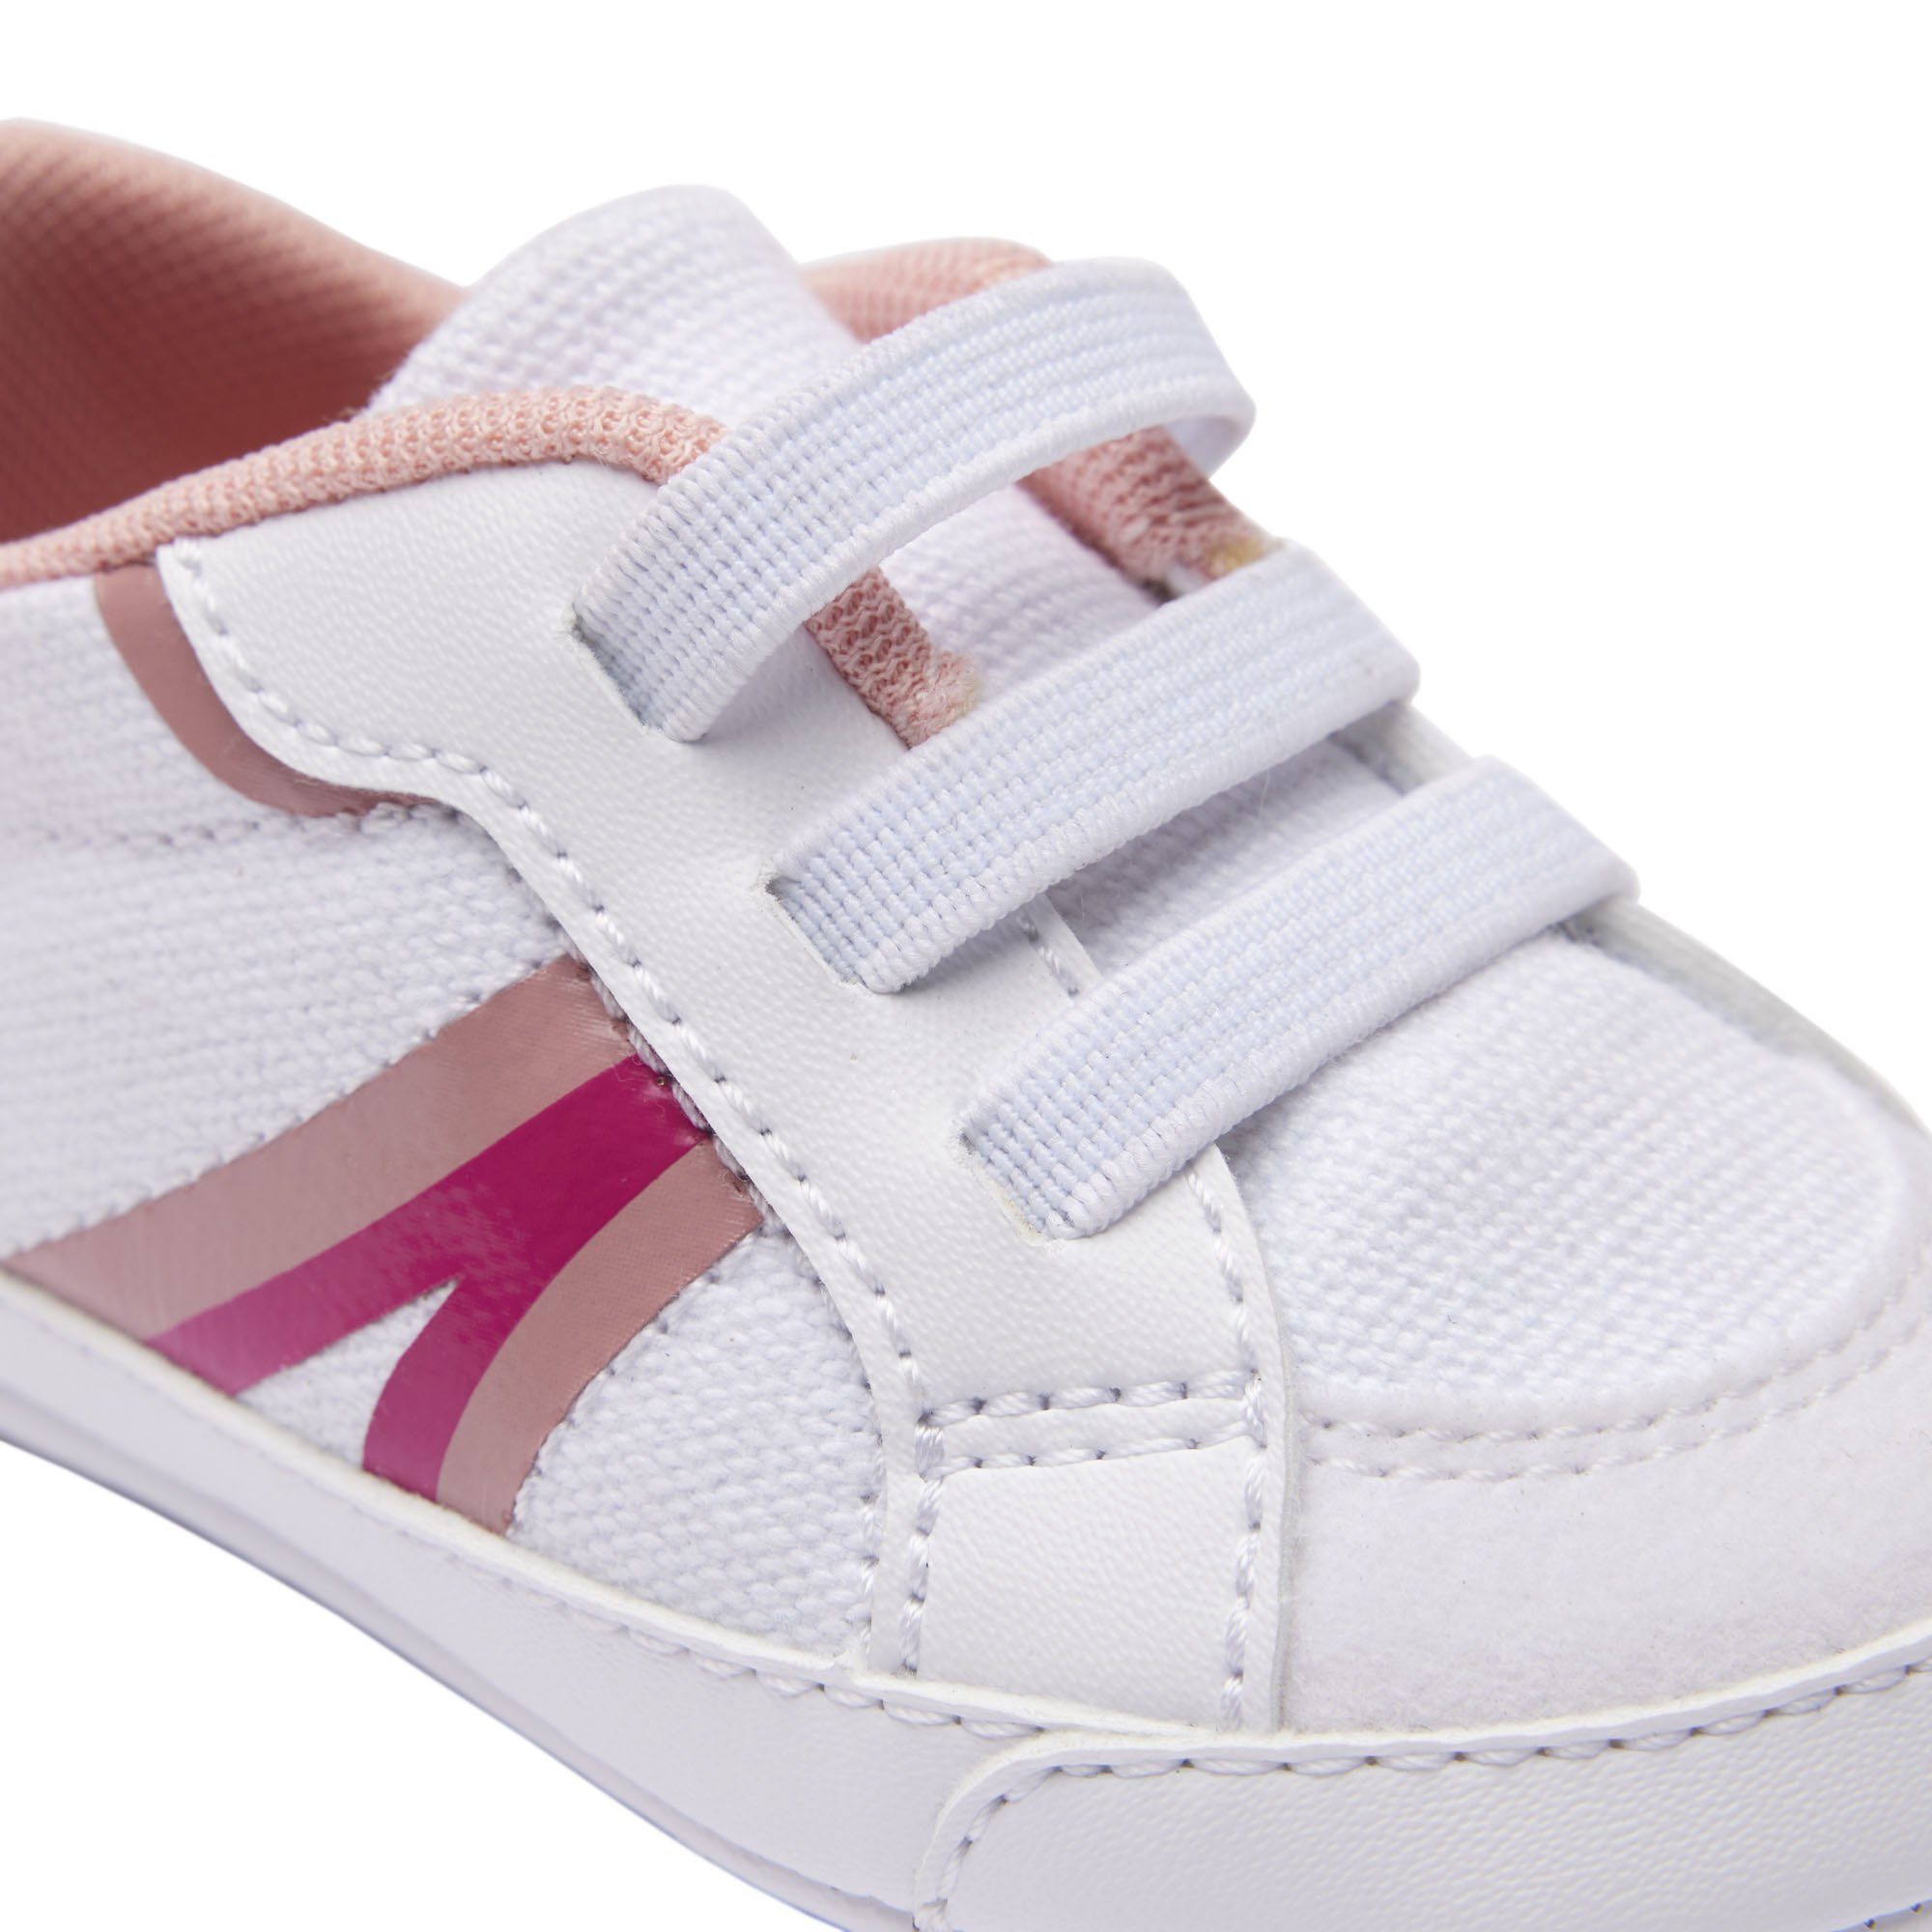 Baby Sneaker, L004 Weiß/Pink Lacoste Schuhe - Krabbelschuhe, Cub, Krabbelschuh